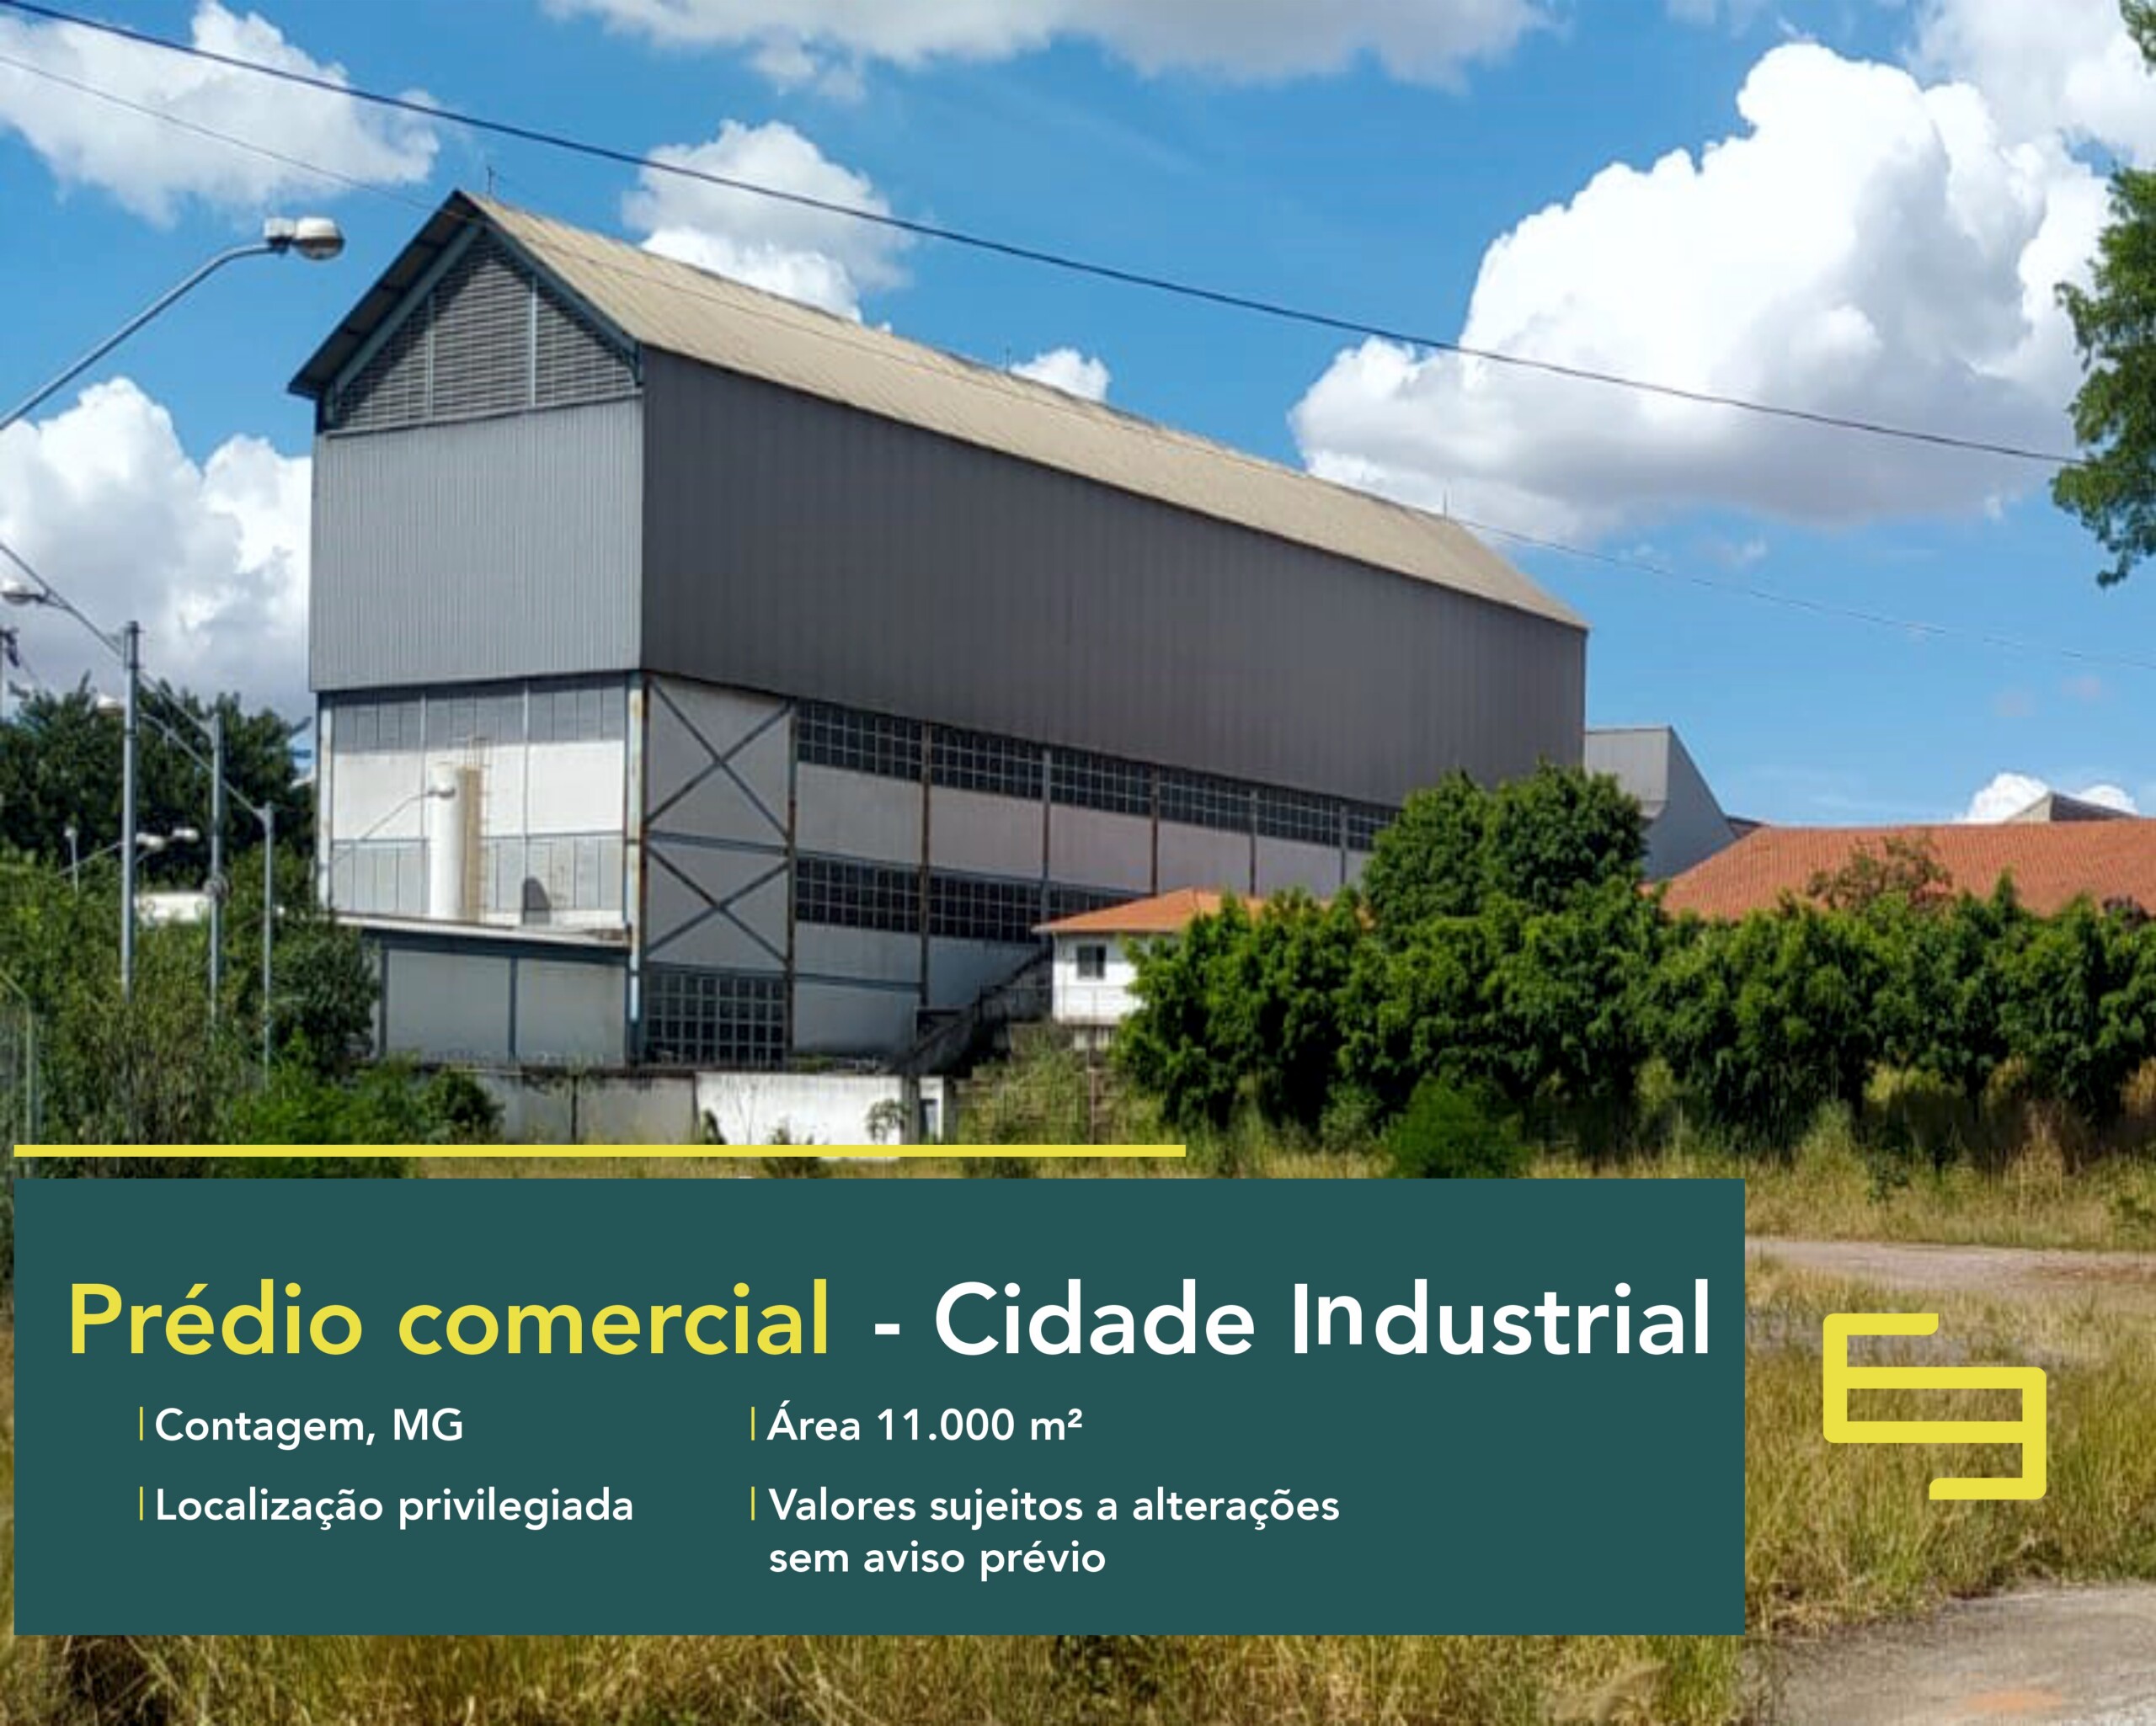 Prédio comercial na Cidade Industrial com 11 mil m² para alugar - Contagem. Salas comerciais/Andares comerciais/Lajes corporativas.